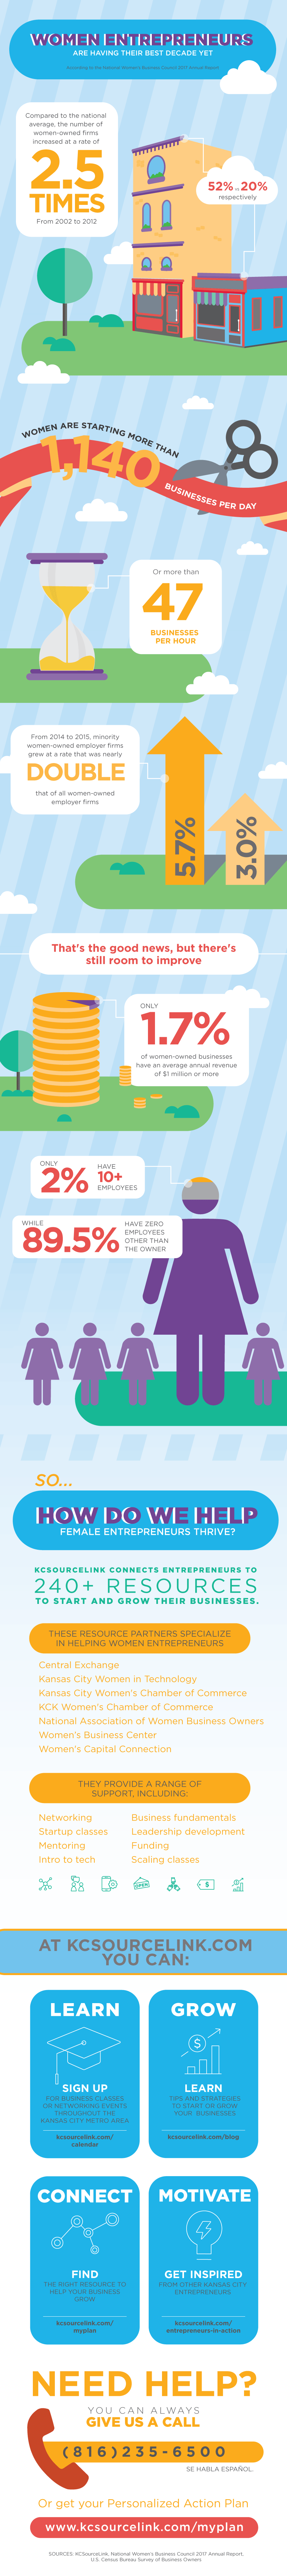 Women in Entrepreneurship Infographic